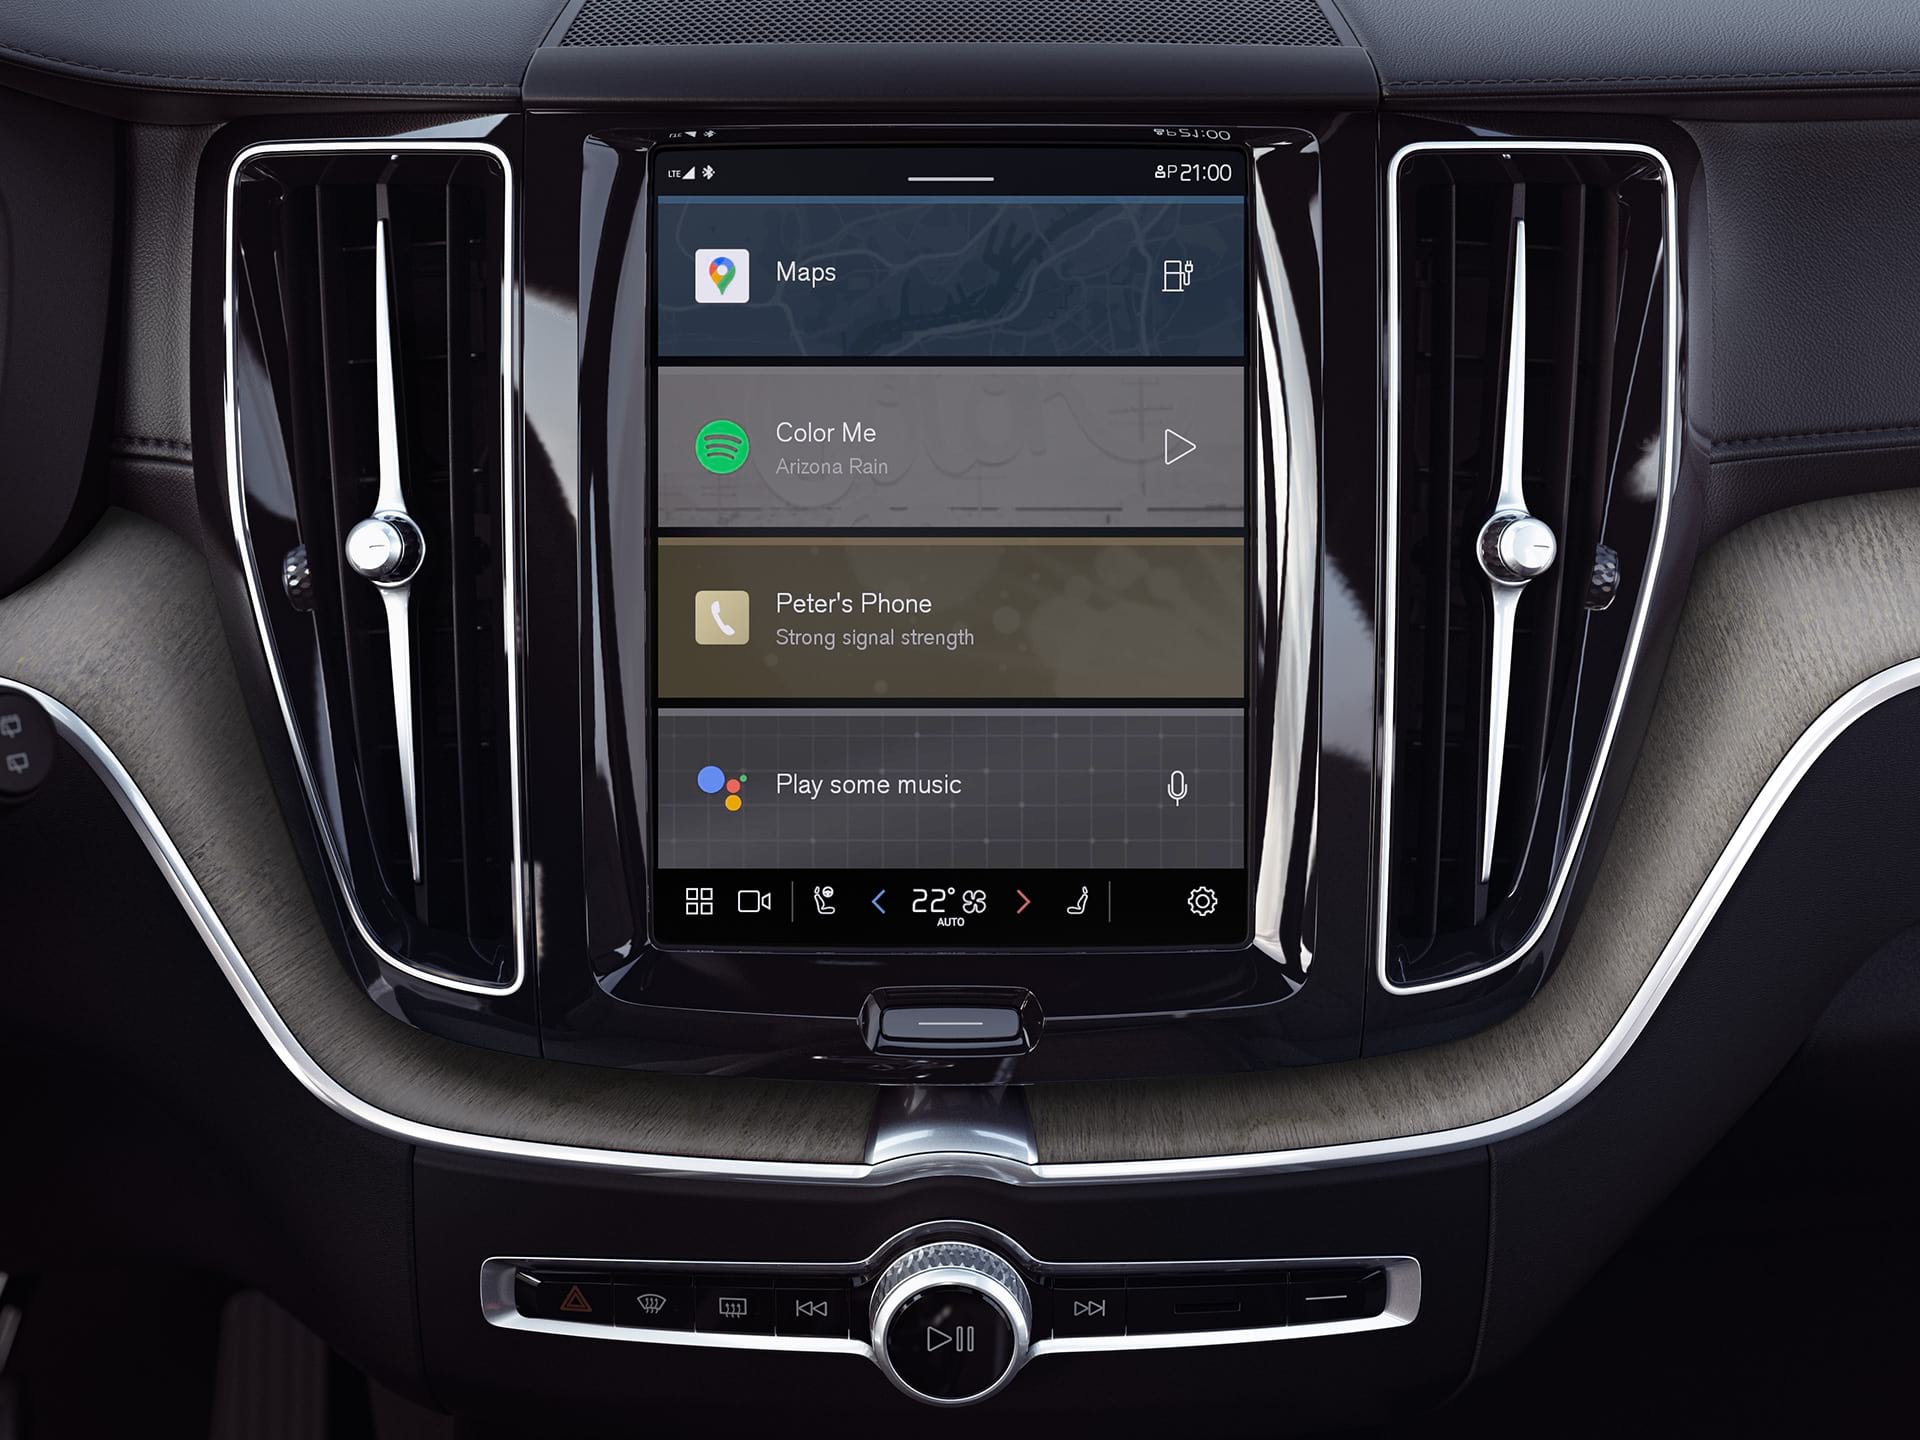 Consolle centrale di un SUV Volvo che mostra il sistema di infotainment Google integrato.